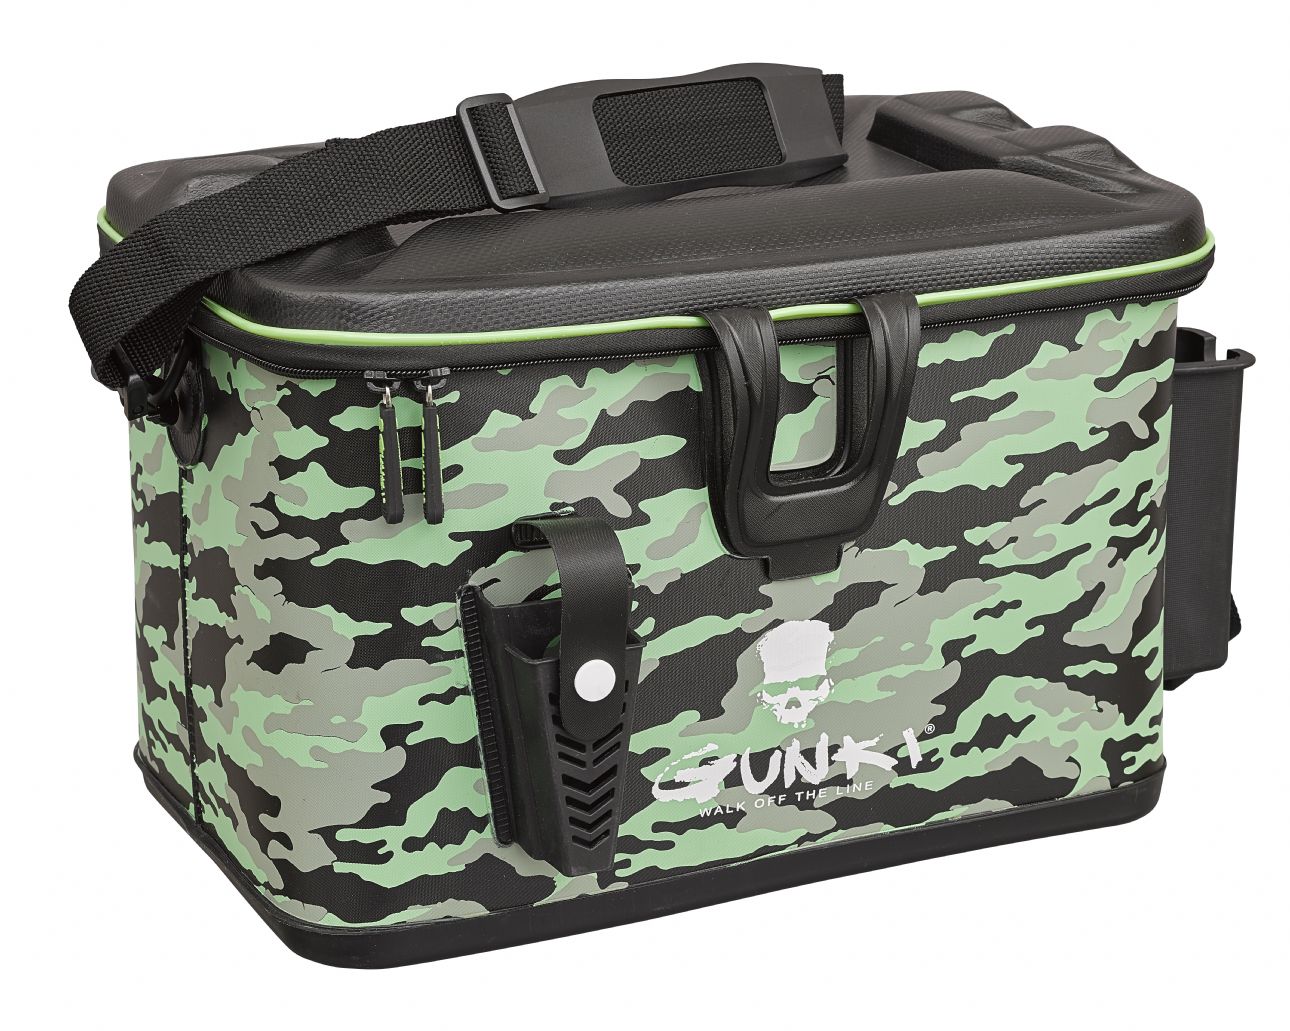 Gunki Safe Bag Squad Bag for Belly Boat Carry Bag Tackletasche Fishing Bag  | eBay